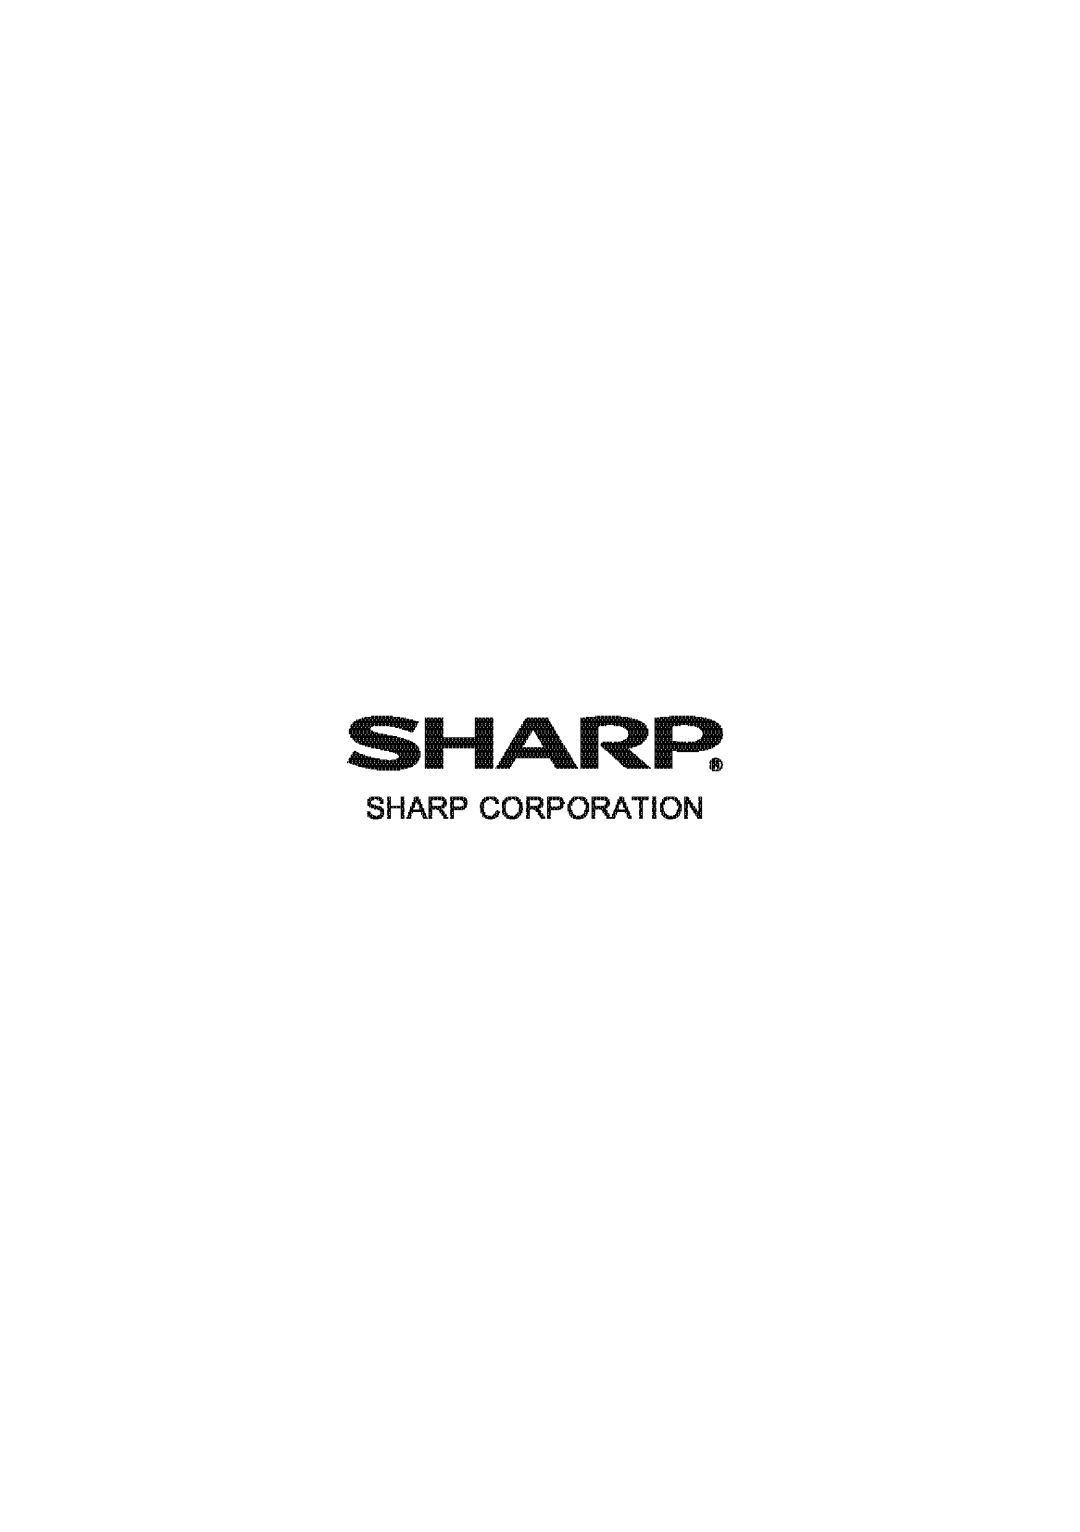 Sharp XR-50S, XR-55X appendix Shar~, Sharp Corporation 